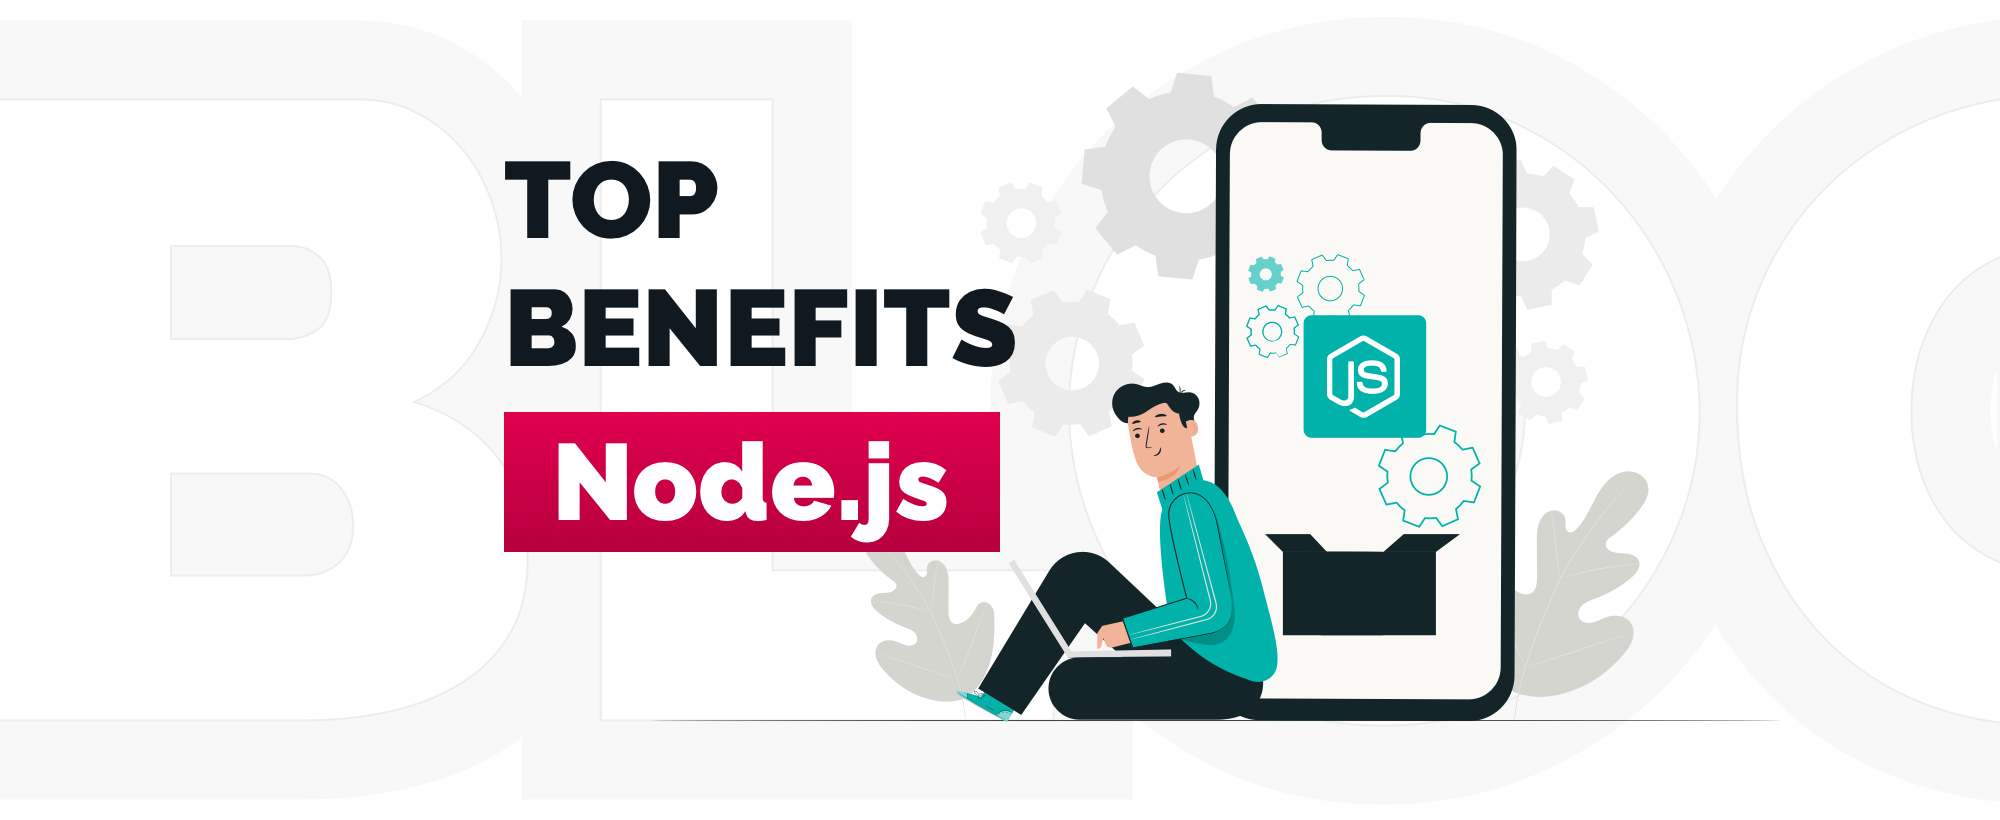 Why Use Node.js for Building Web Apps? Advantages of Node.js Web Development